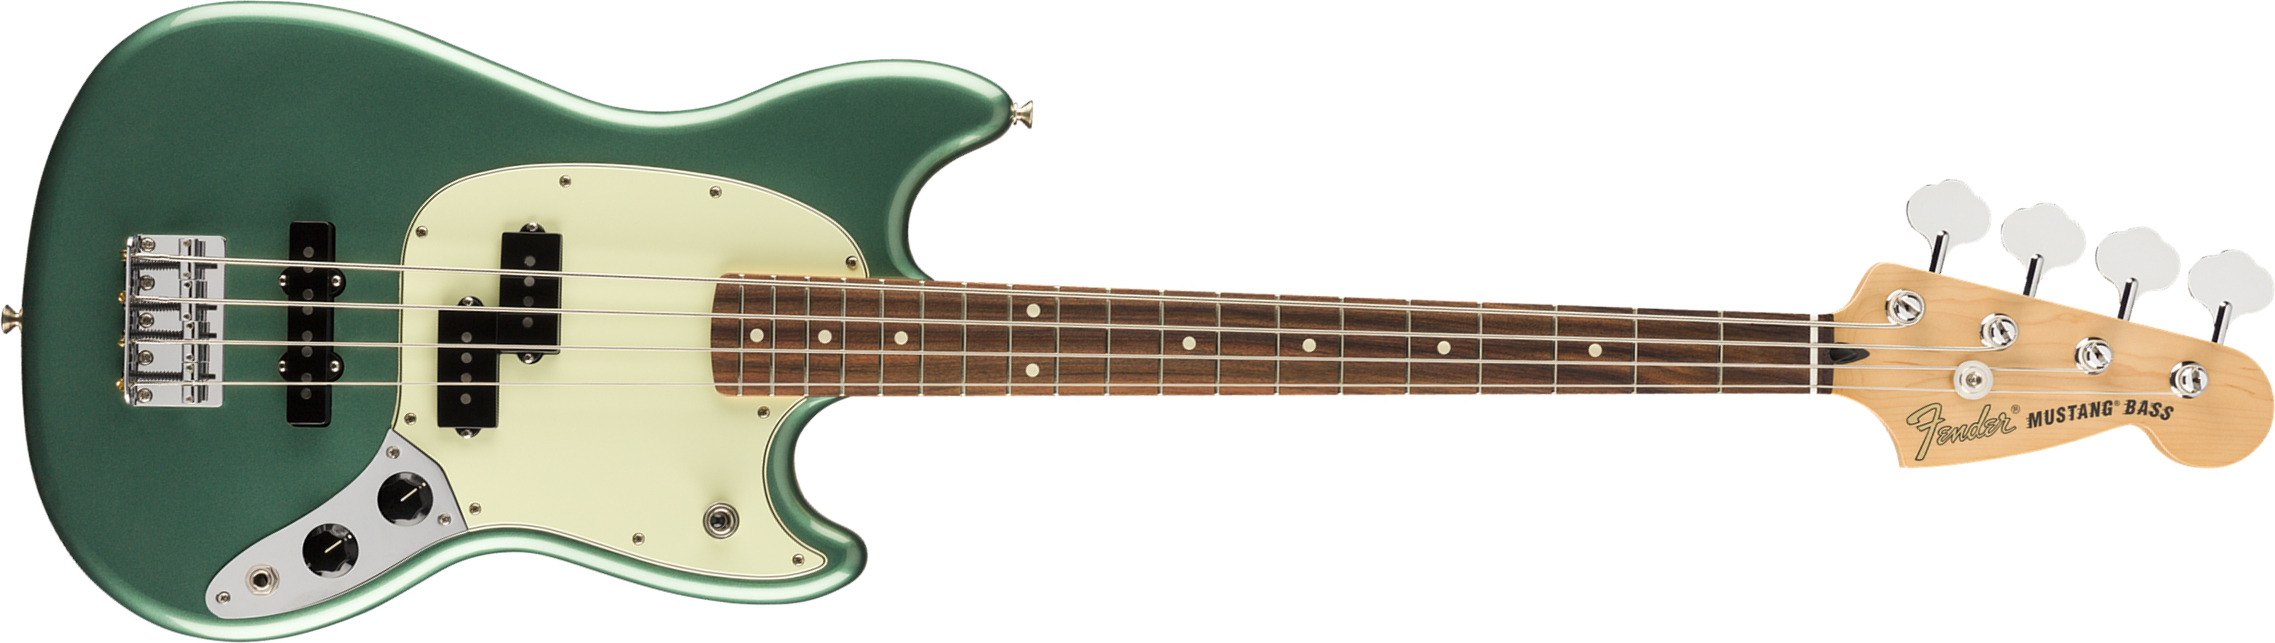 Fender Mustang Bass Pj Player Ltd Mex Pf - Sherwood Green Metallic - Short scale elektrische bas - Main picture